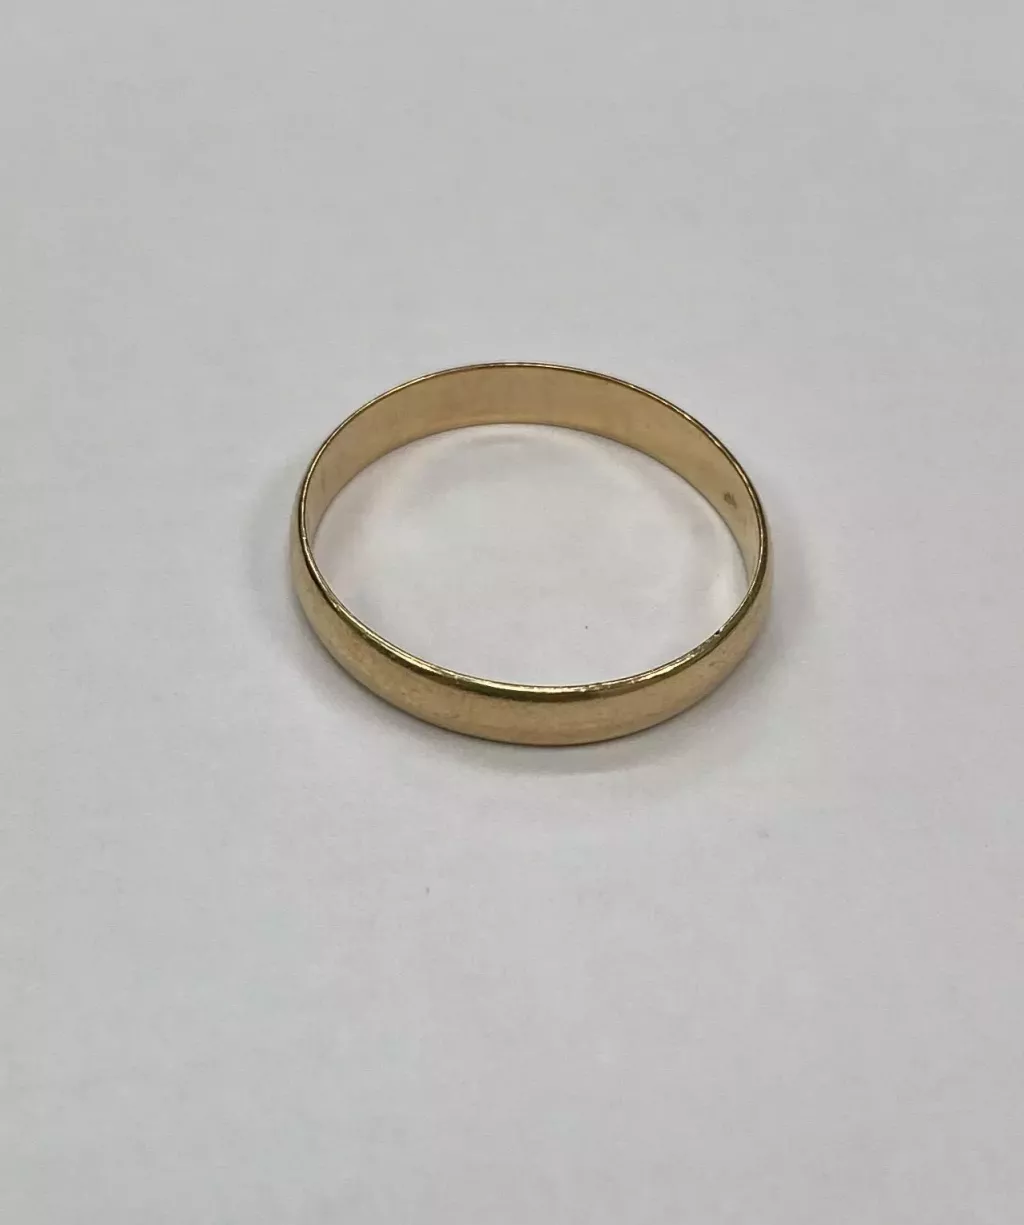 Купить б/у Обручальное кольцо 2,3 гр ( Актау)-0